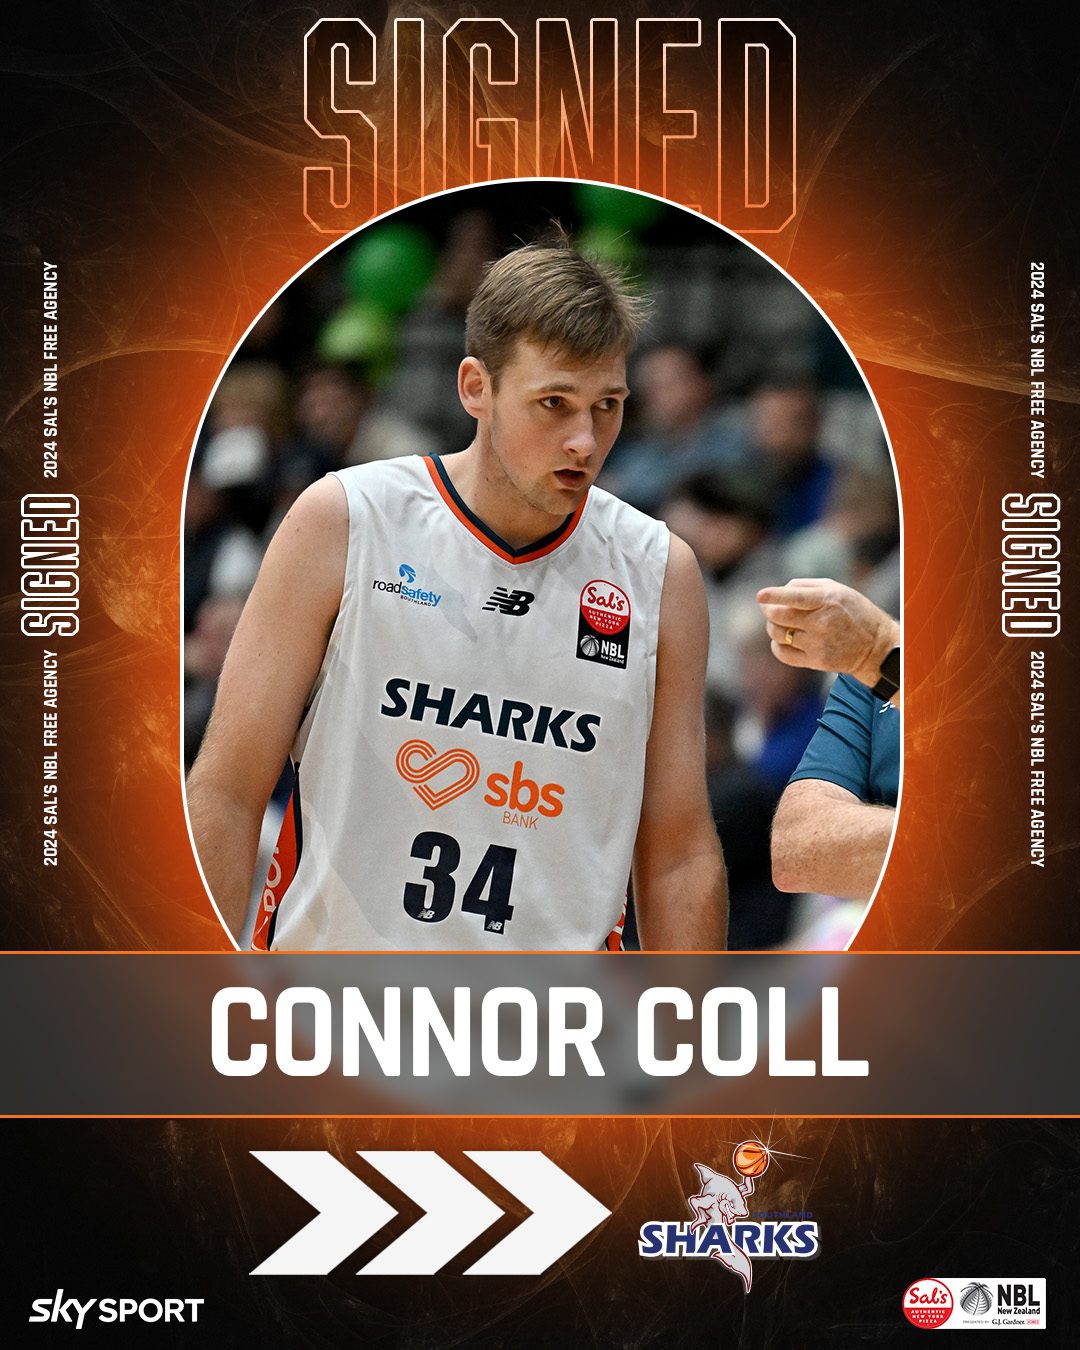 Connor Coll